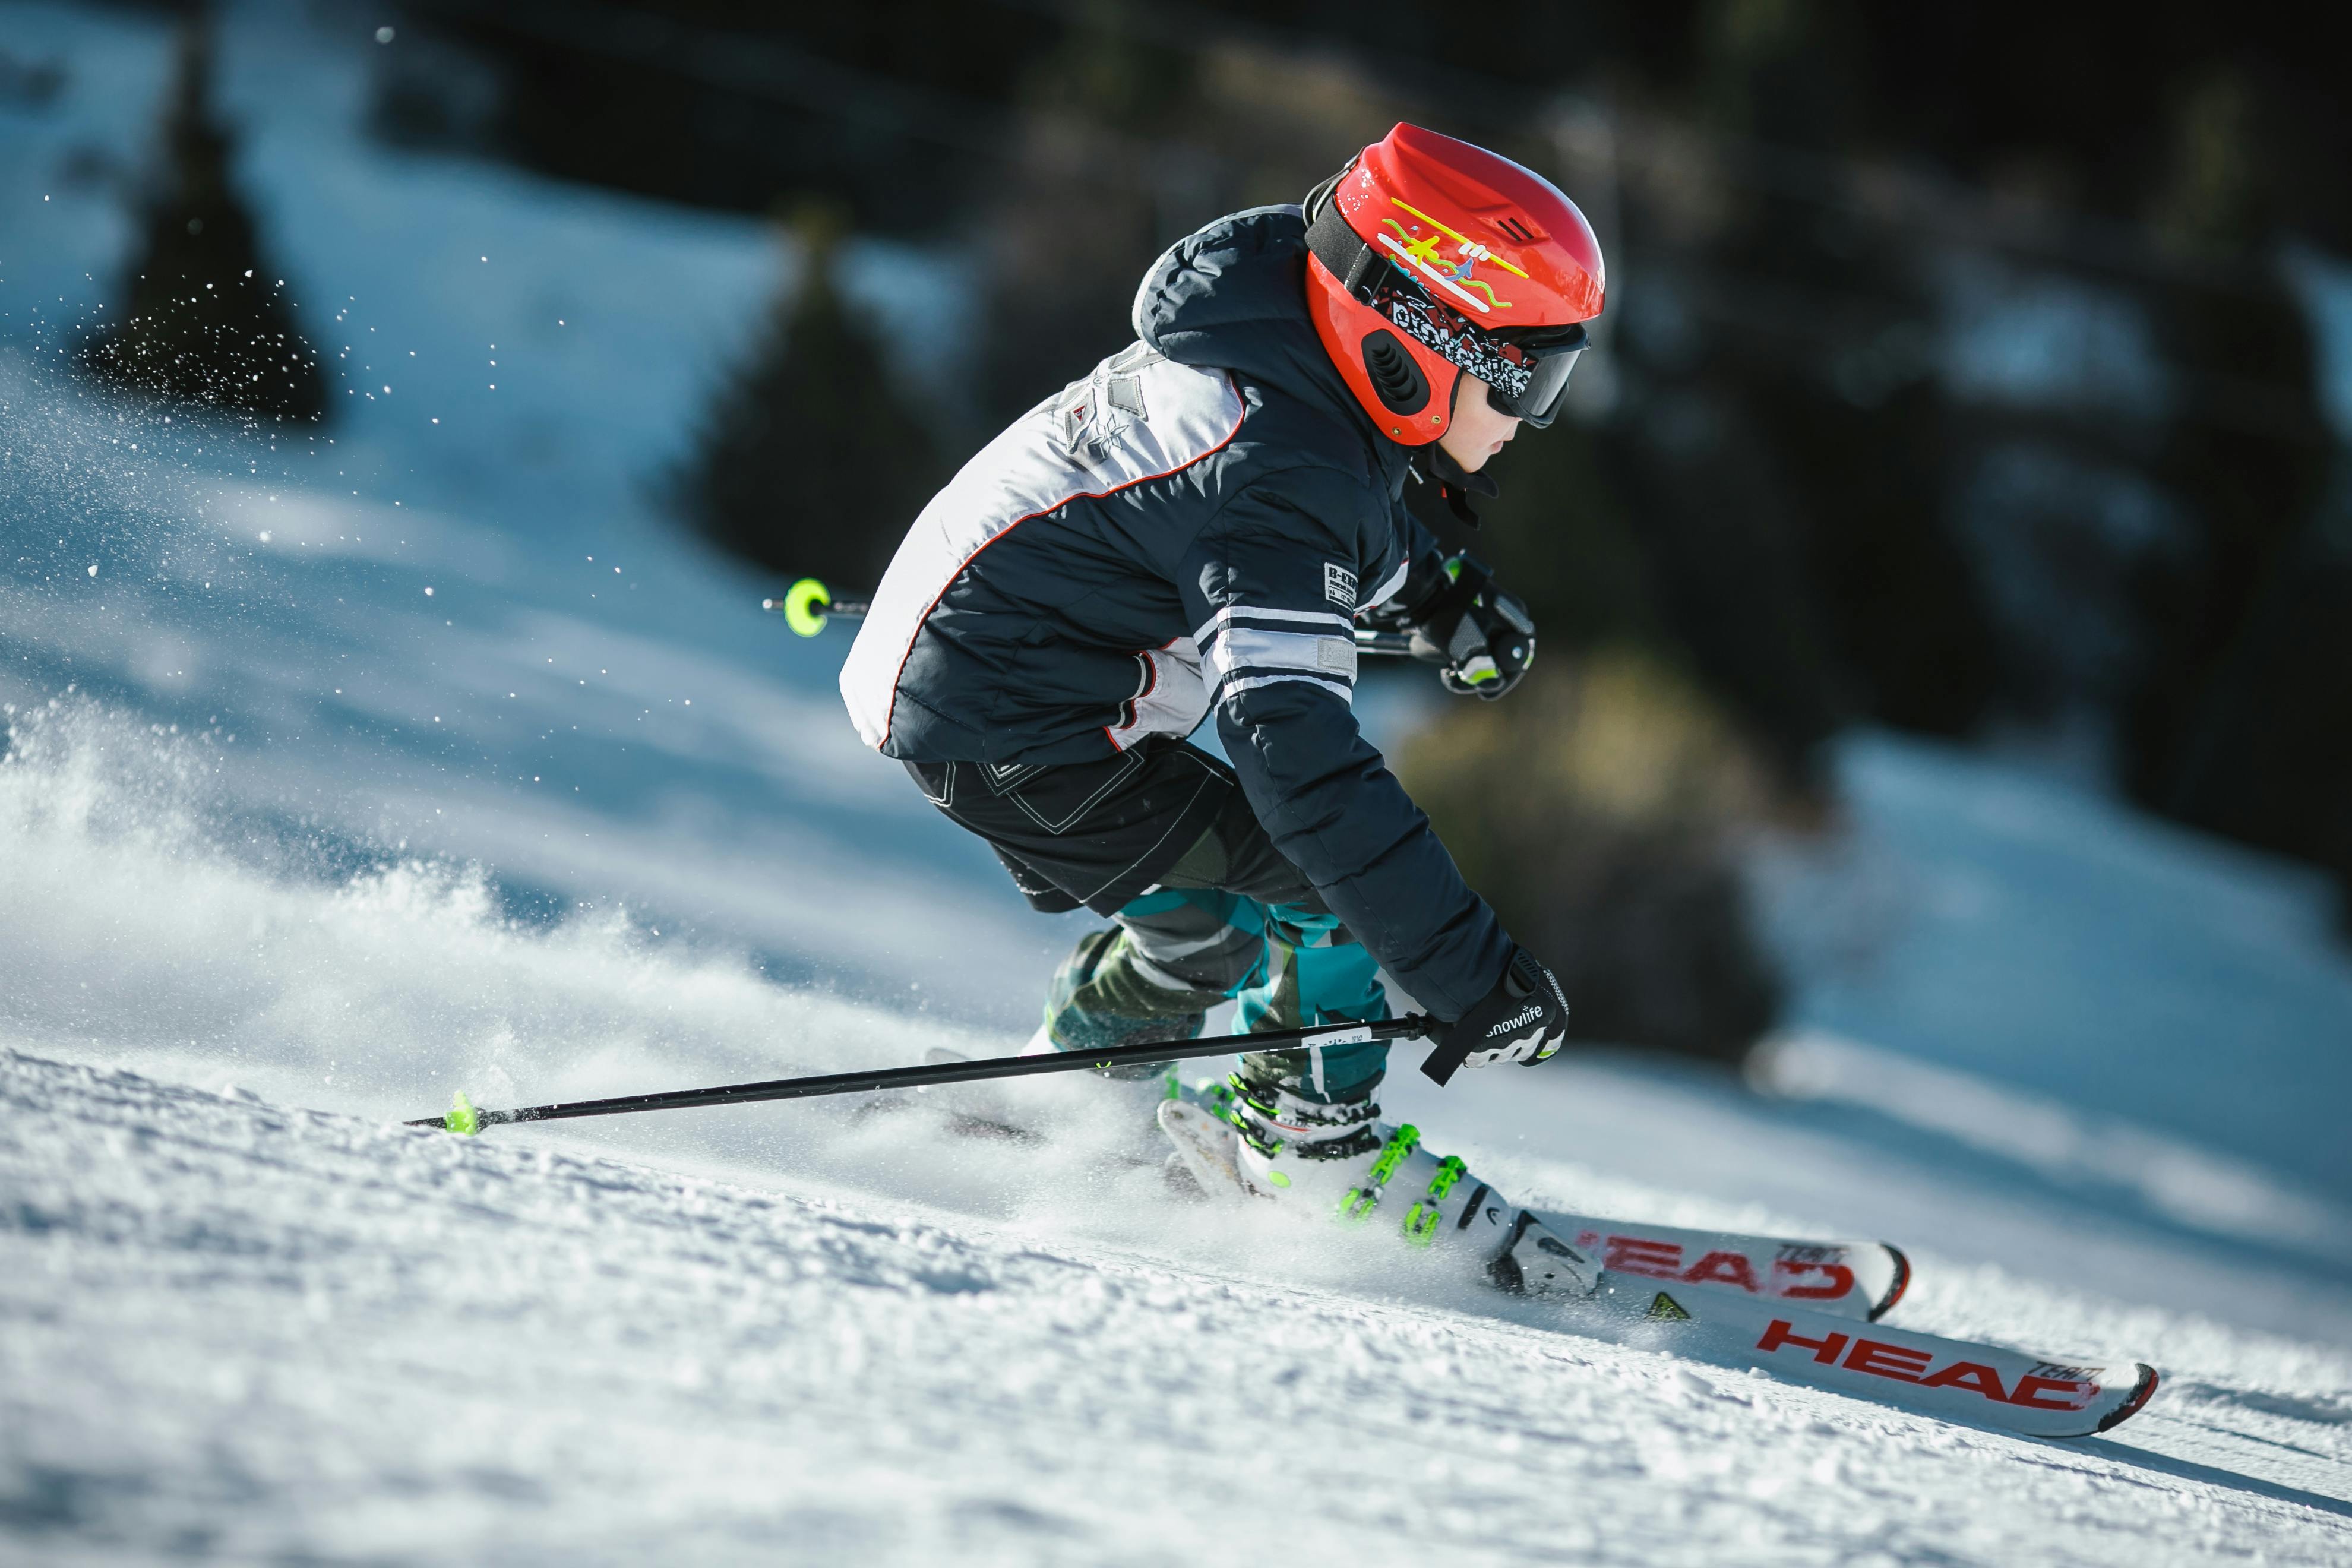 Hombre Haciendo Esquí Sobre Hielo En Campo De Nieve En Fotografía De Enfoque Superficial · Foto de stock gratuita